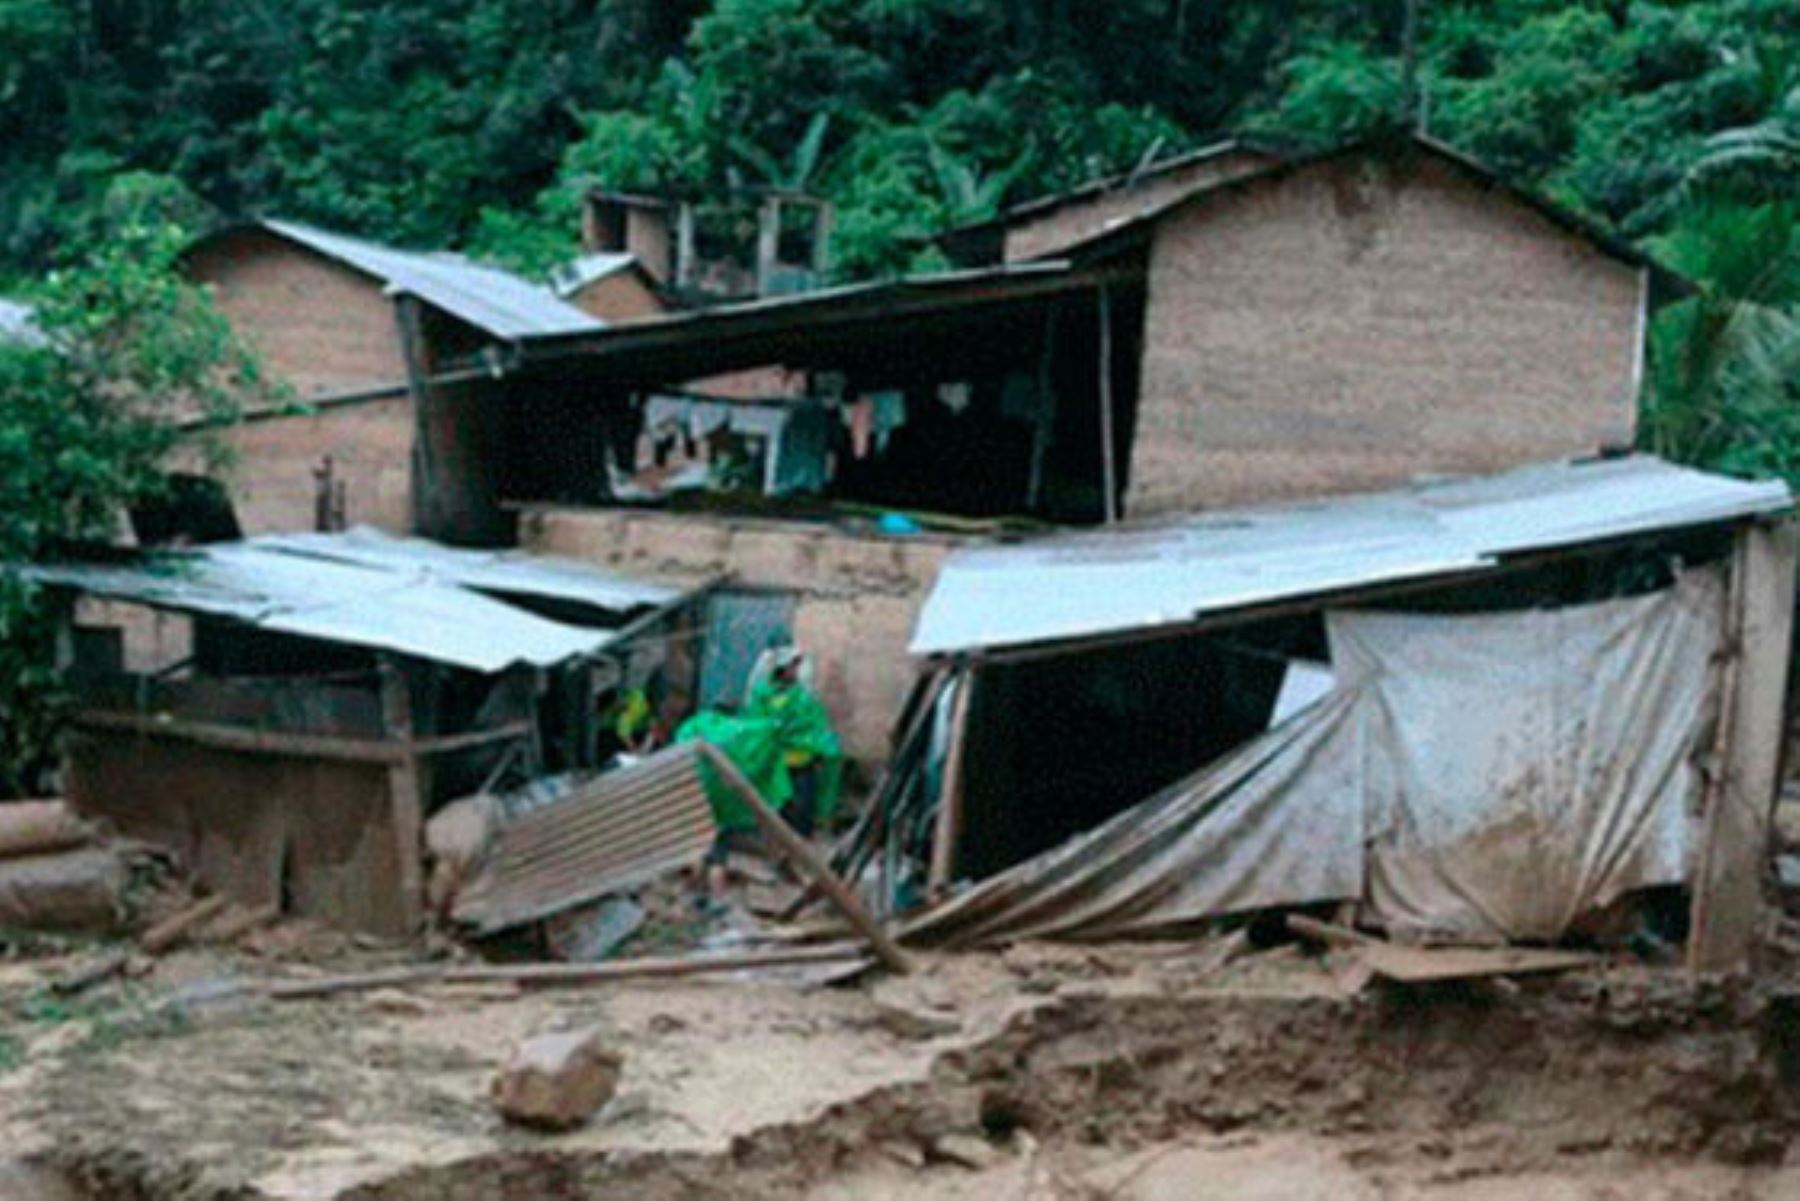 Vientos afectaron techos de viviendas de caserío en el distrito de Castillo Grande, en la región Huánuco. Foto: Internet